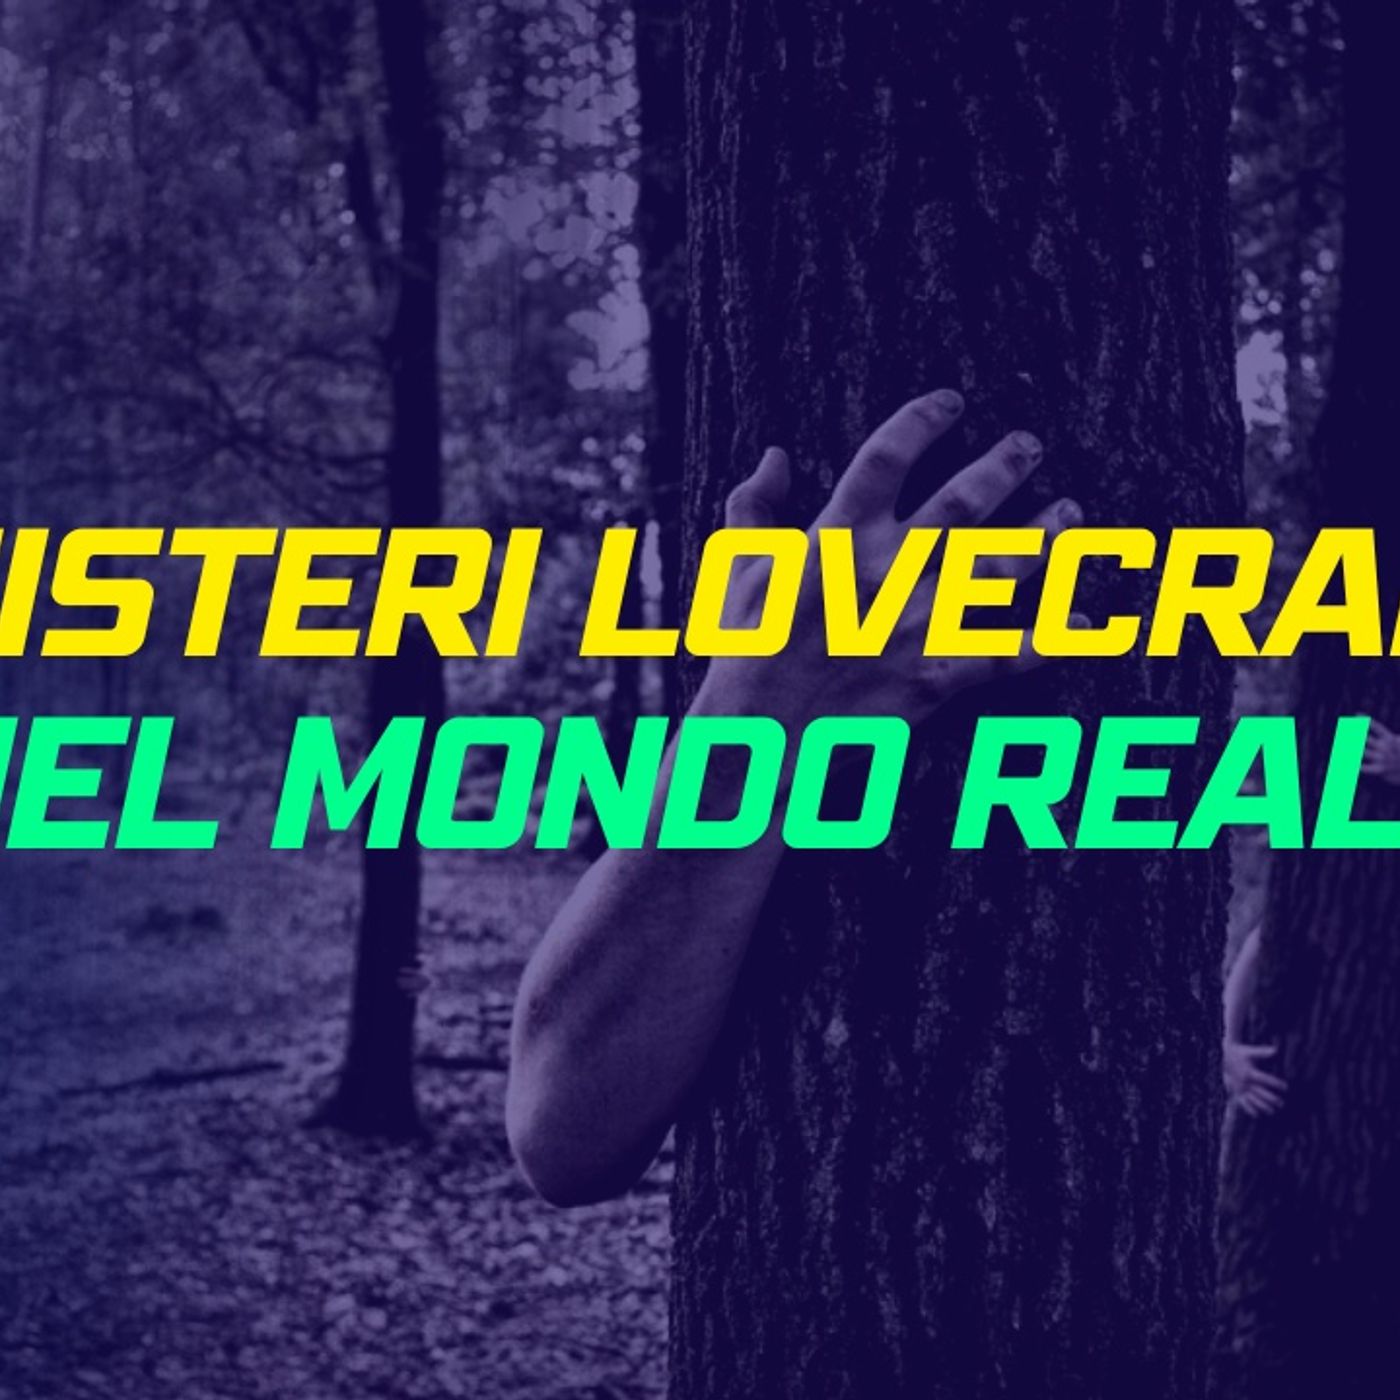 Top 6 Misteri Macabri Lovecraftiani nel Mondo Reale